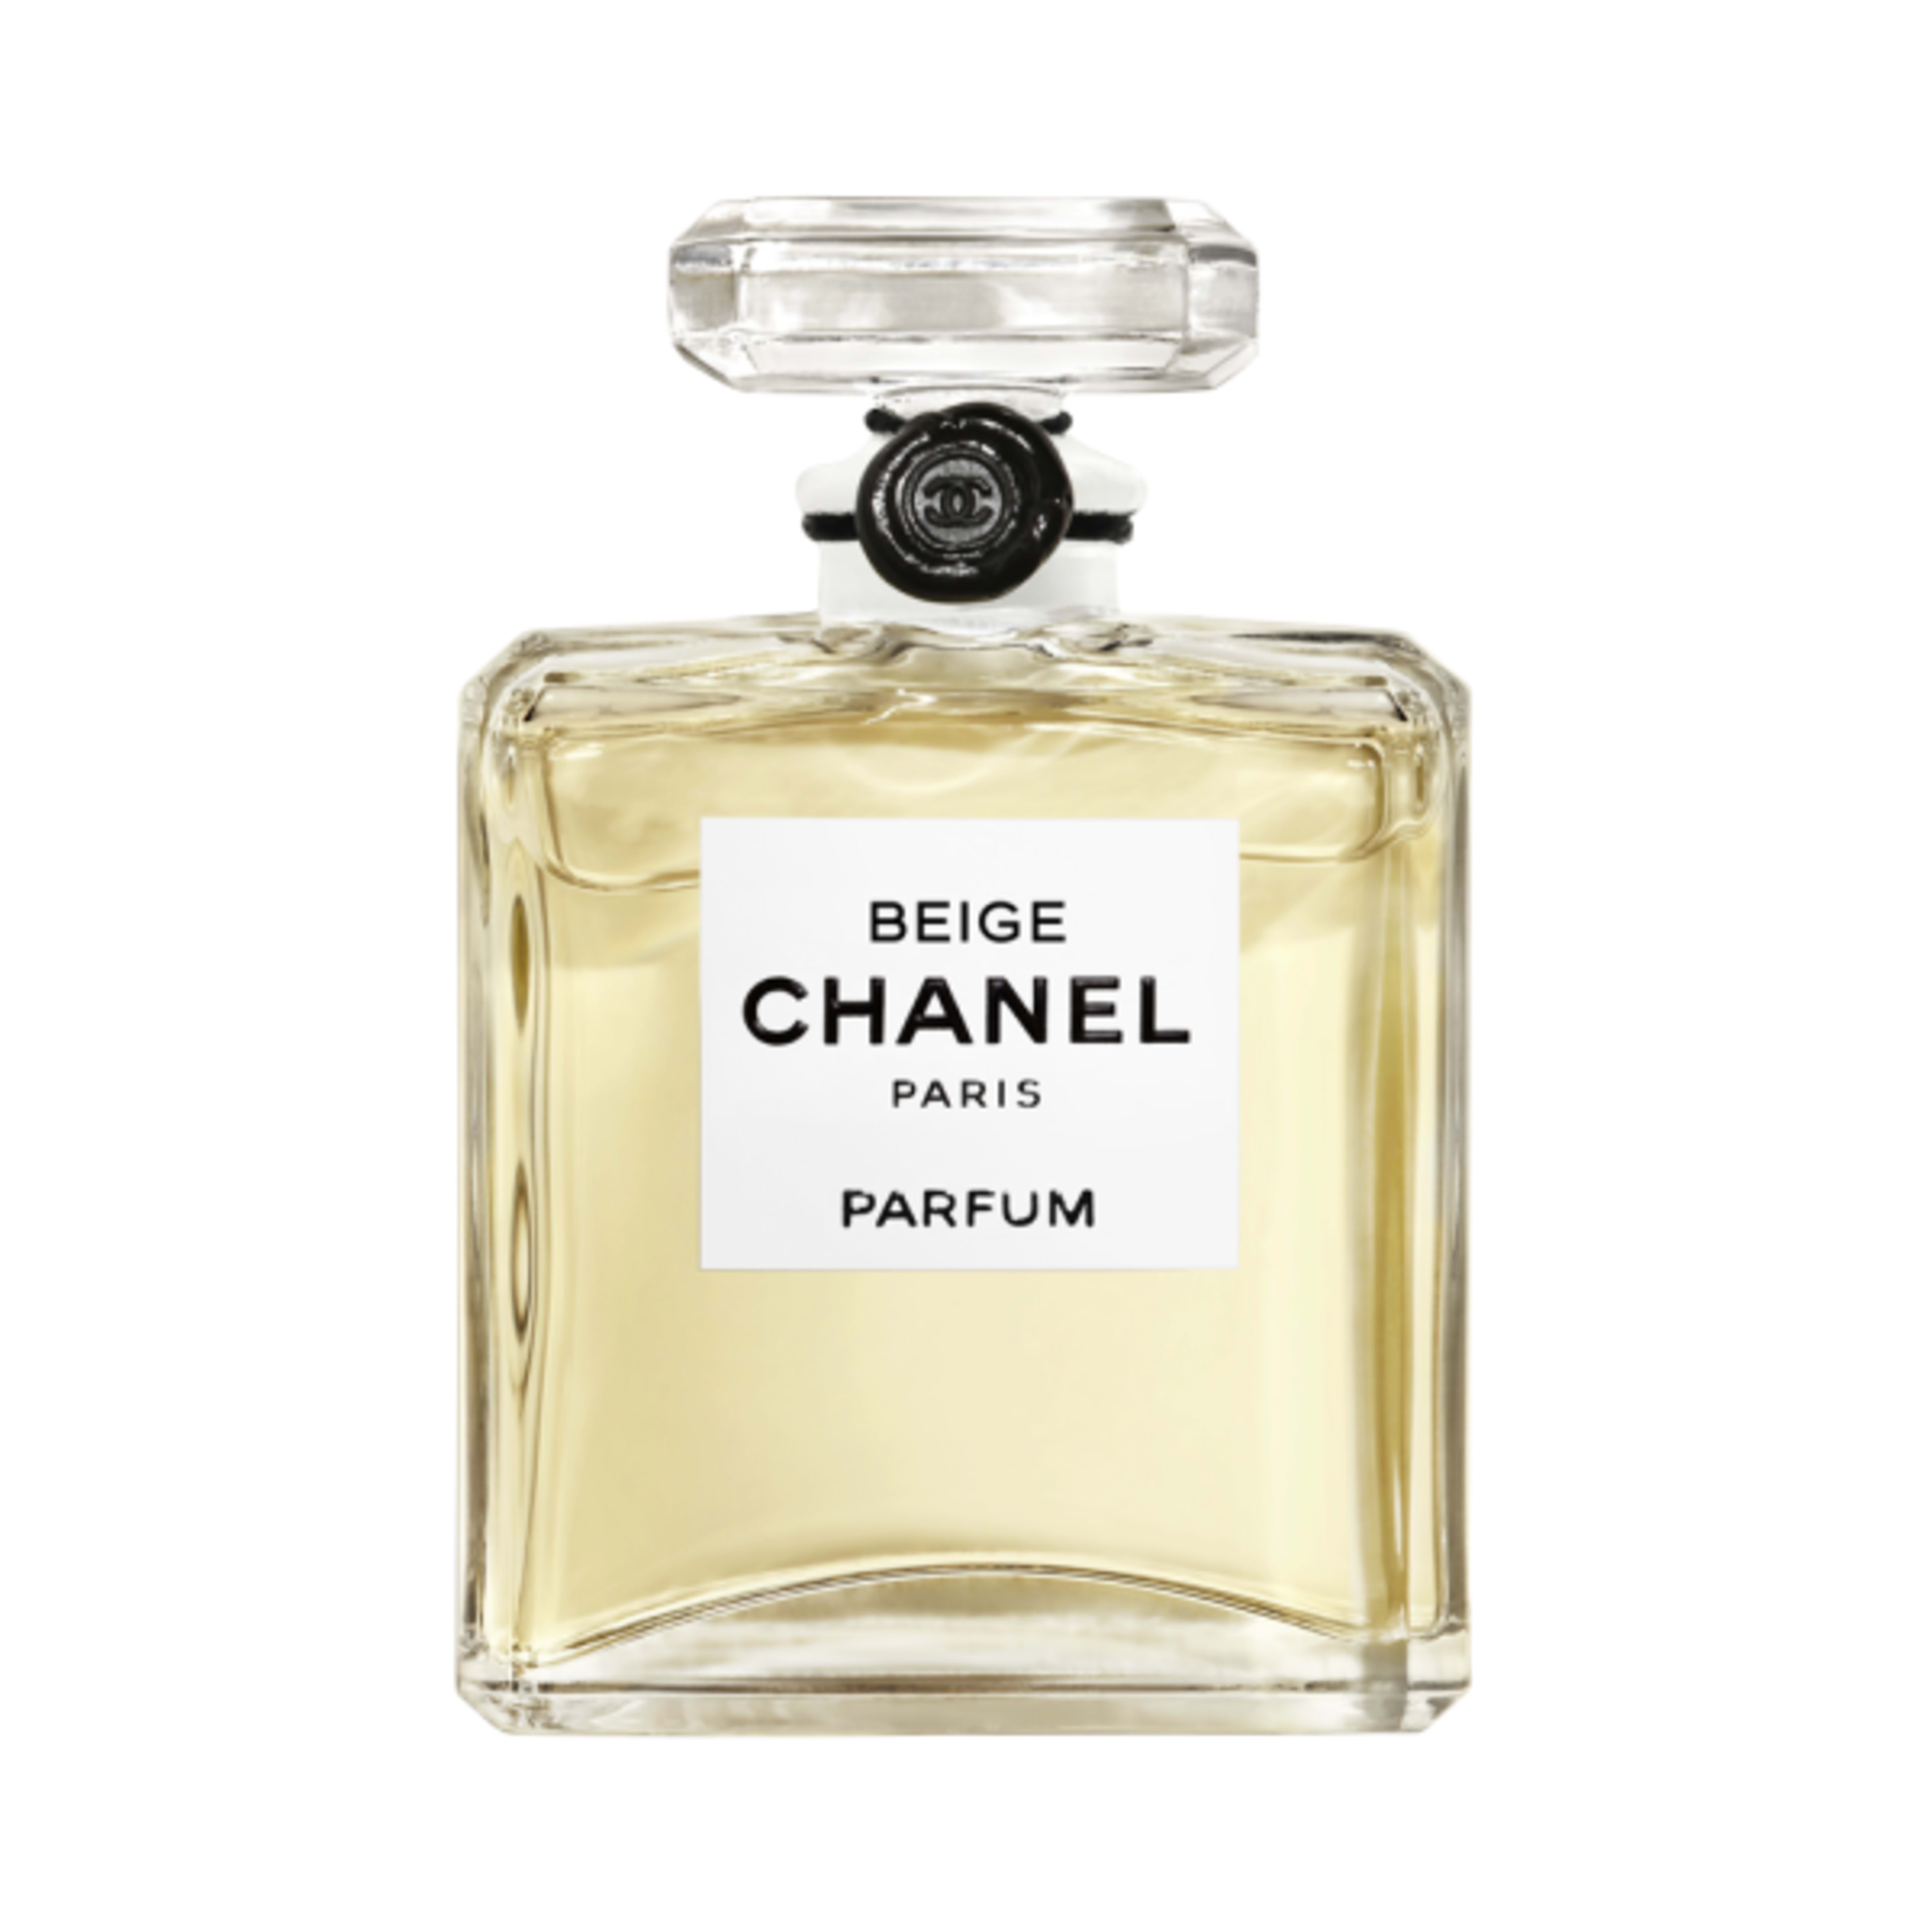 Chanel Les Exclusifs De Chanel Beige Parfum